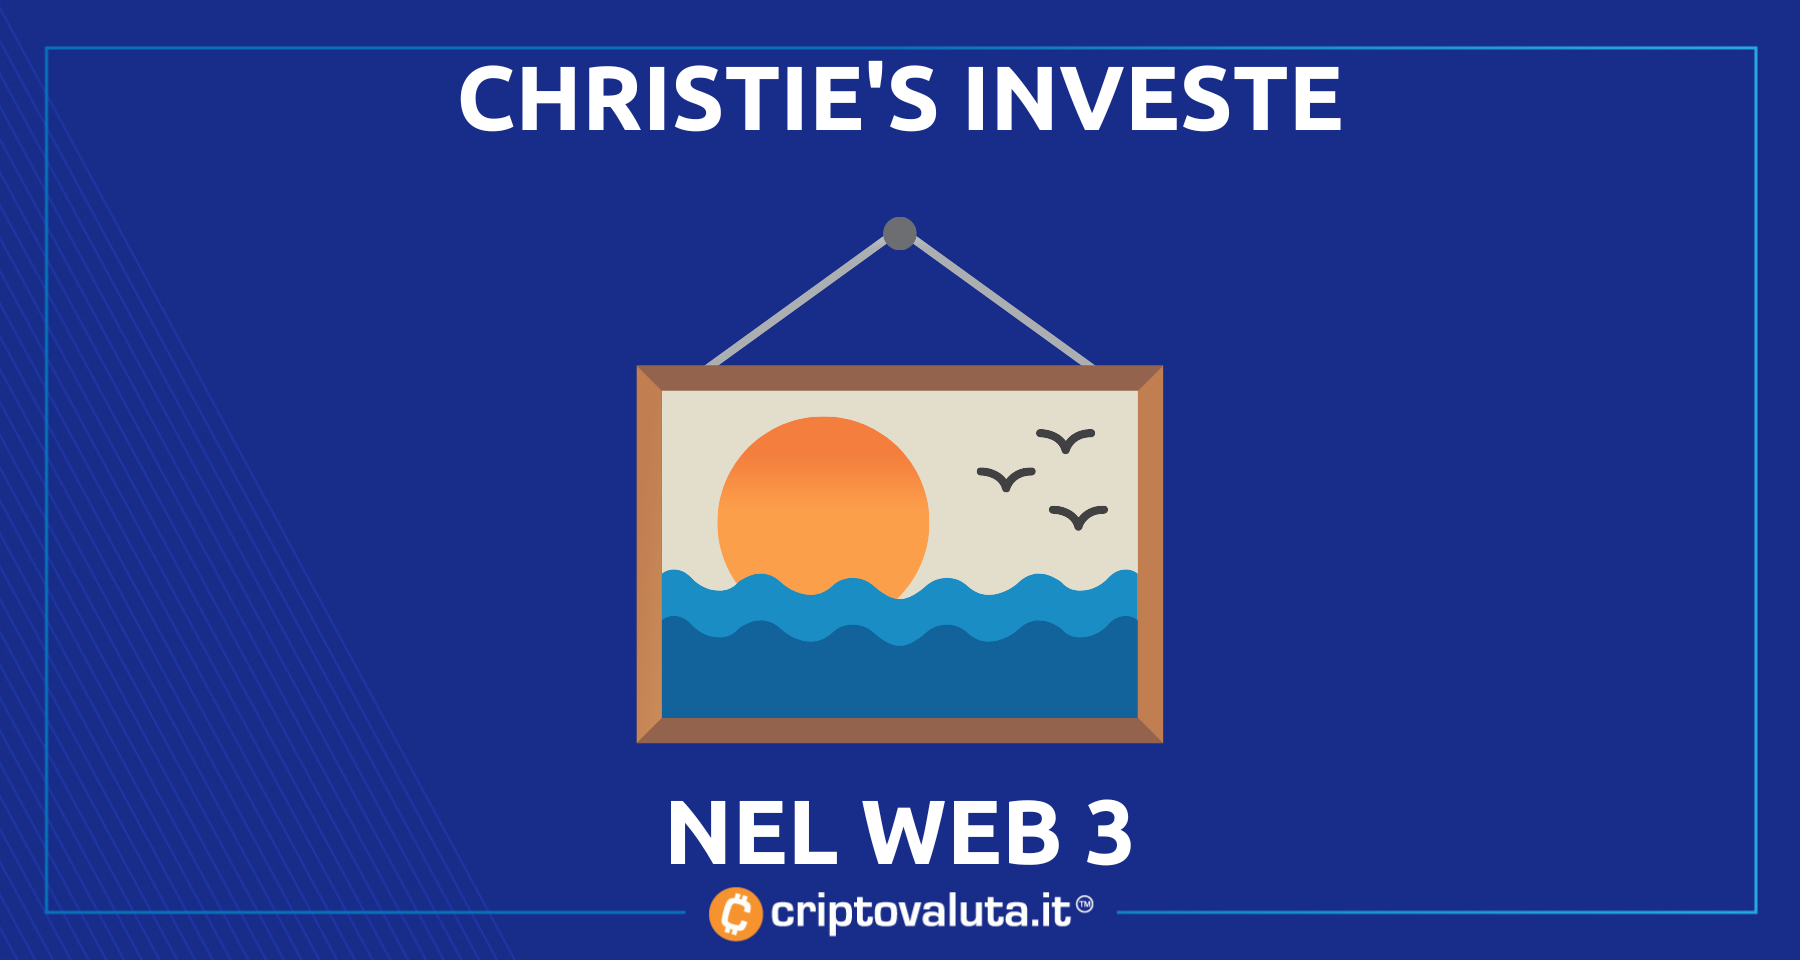 Christie’s inaugura il suo fondo Web 3 | Metaverse e NFT nel mondo dell’arte